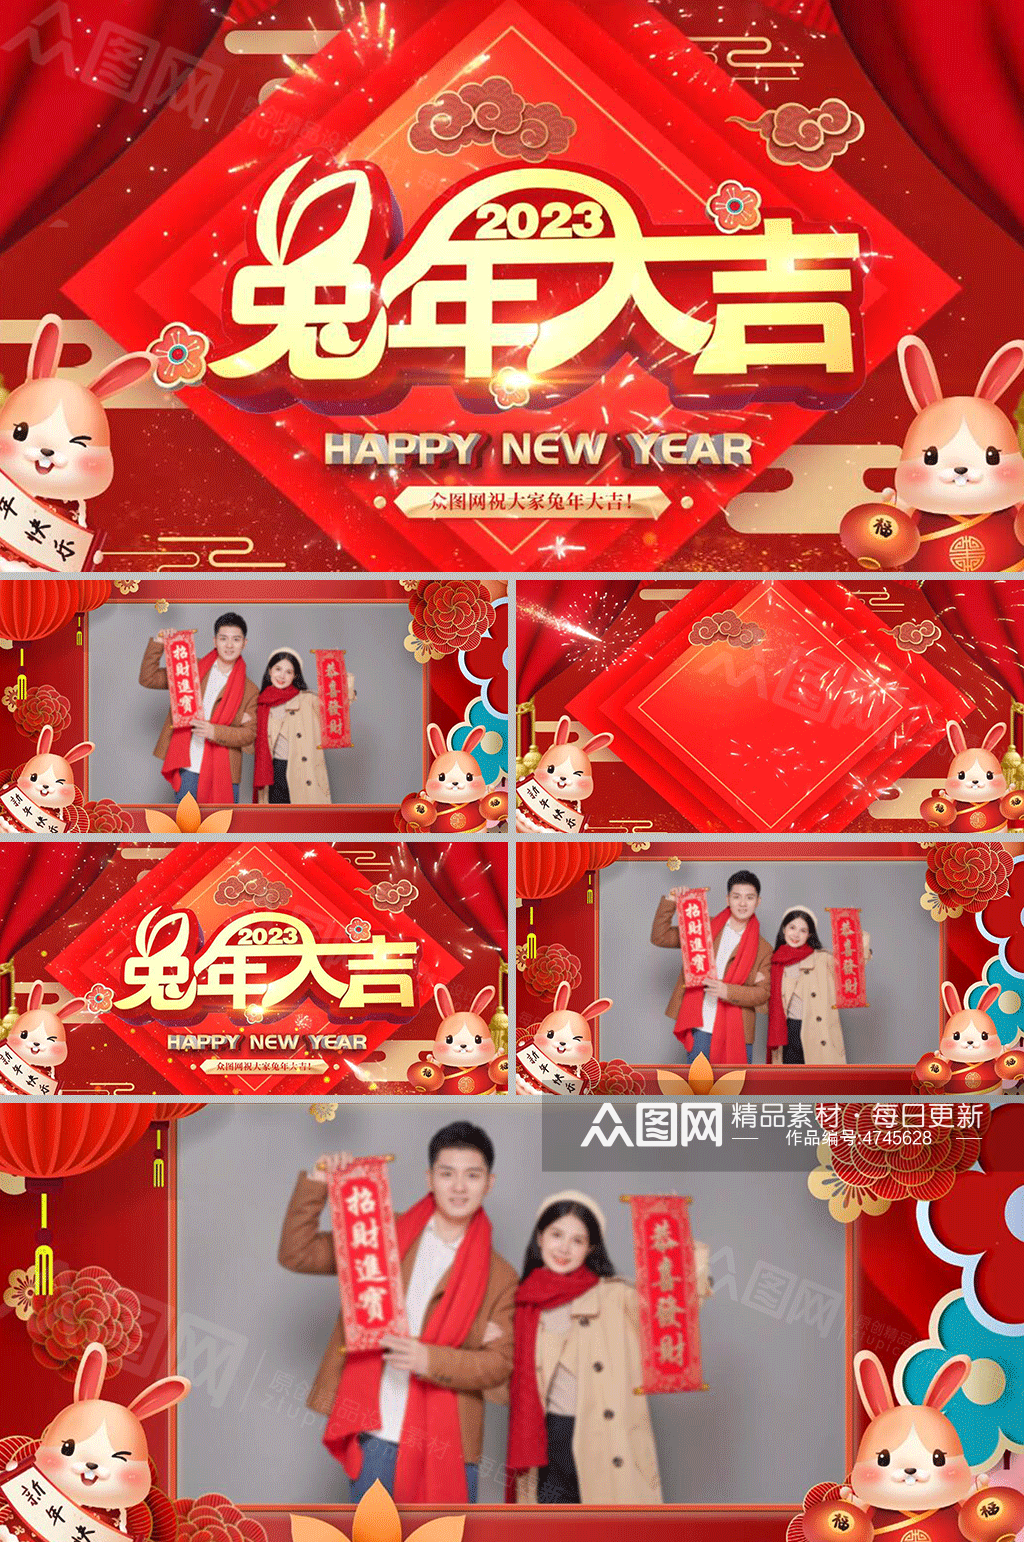 2023兔年大吉新年喜庆中国节拜年视频模板素材